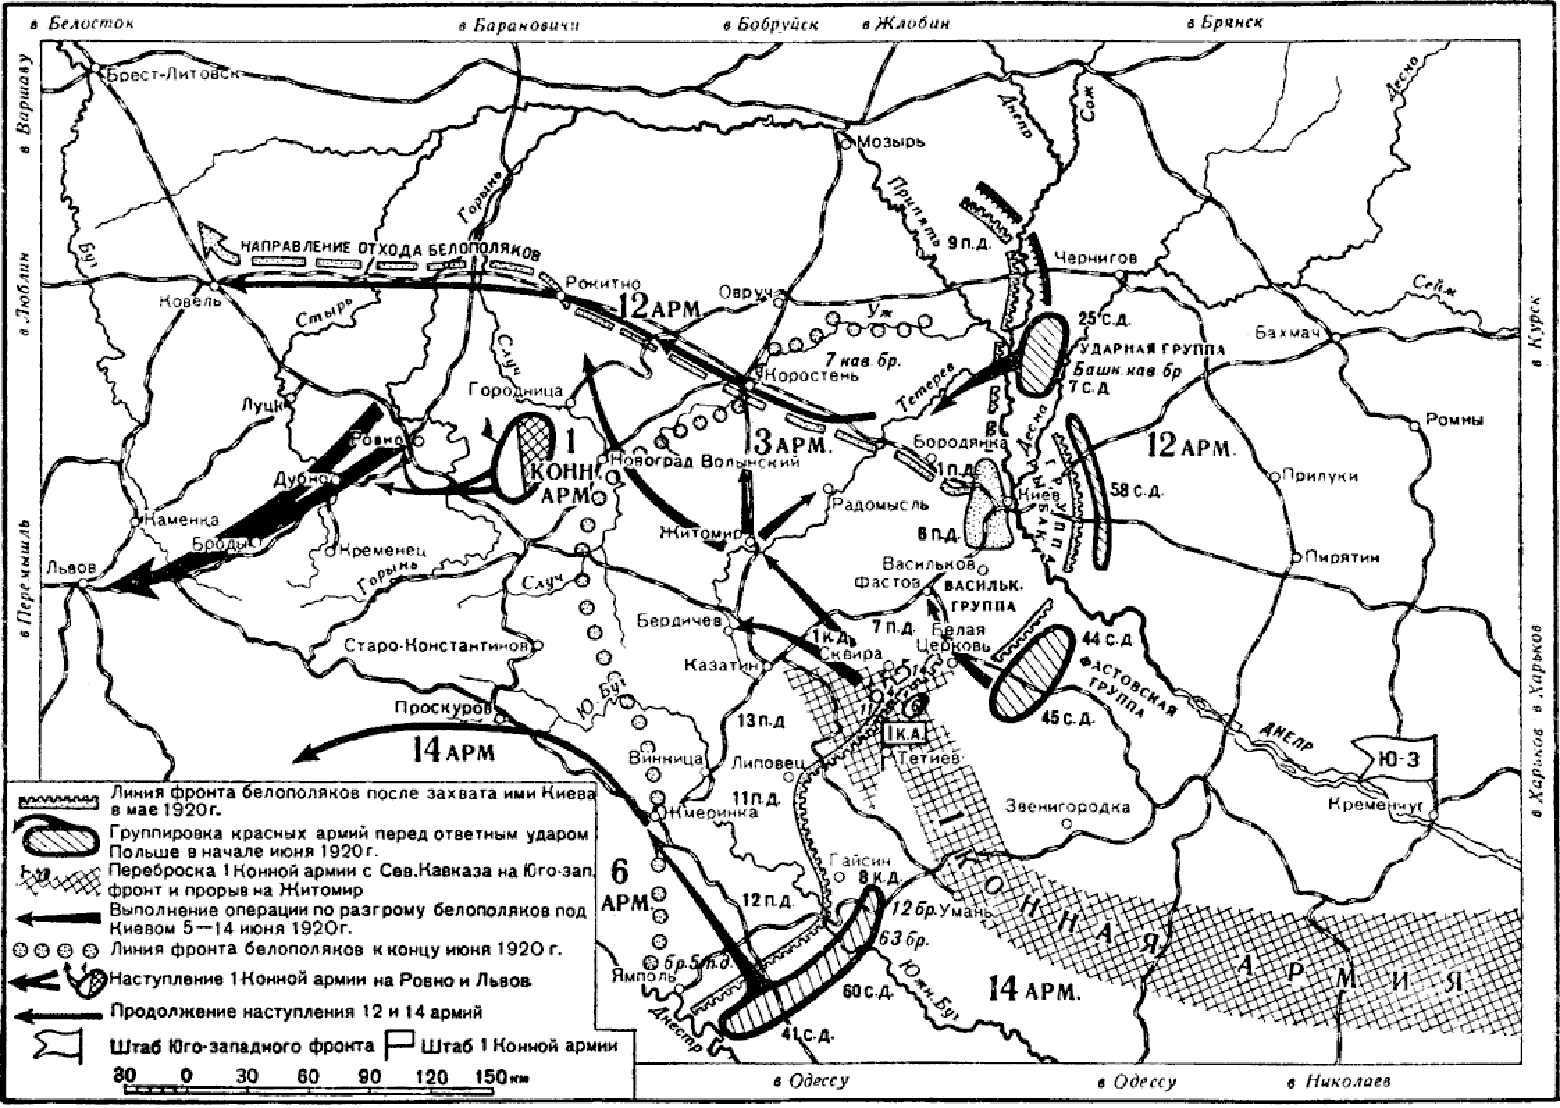 Карта гражданской войны в России 1917-1922. Оборона против польских войск